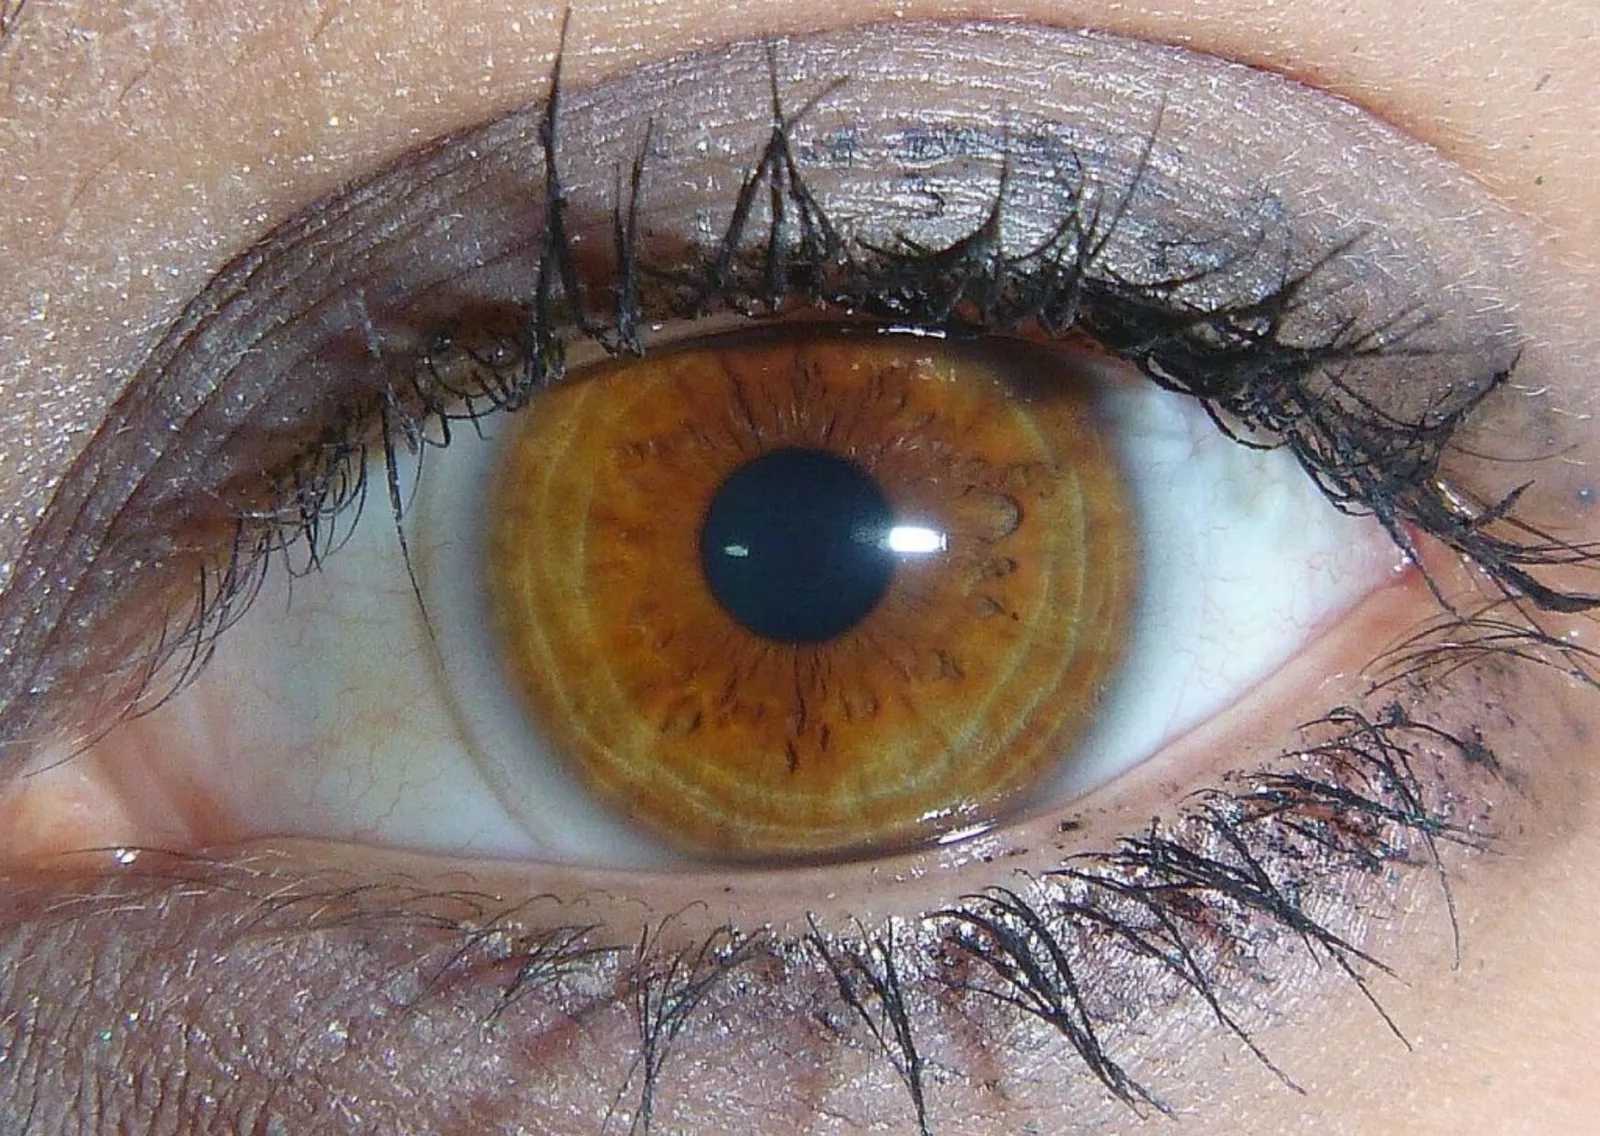 7 Kondisi Mata Ini Bisa Menjelaskan Bagaimana Kondisi Kesehatanmu